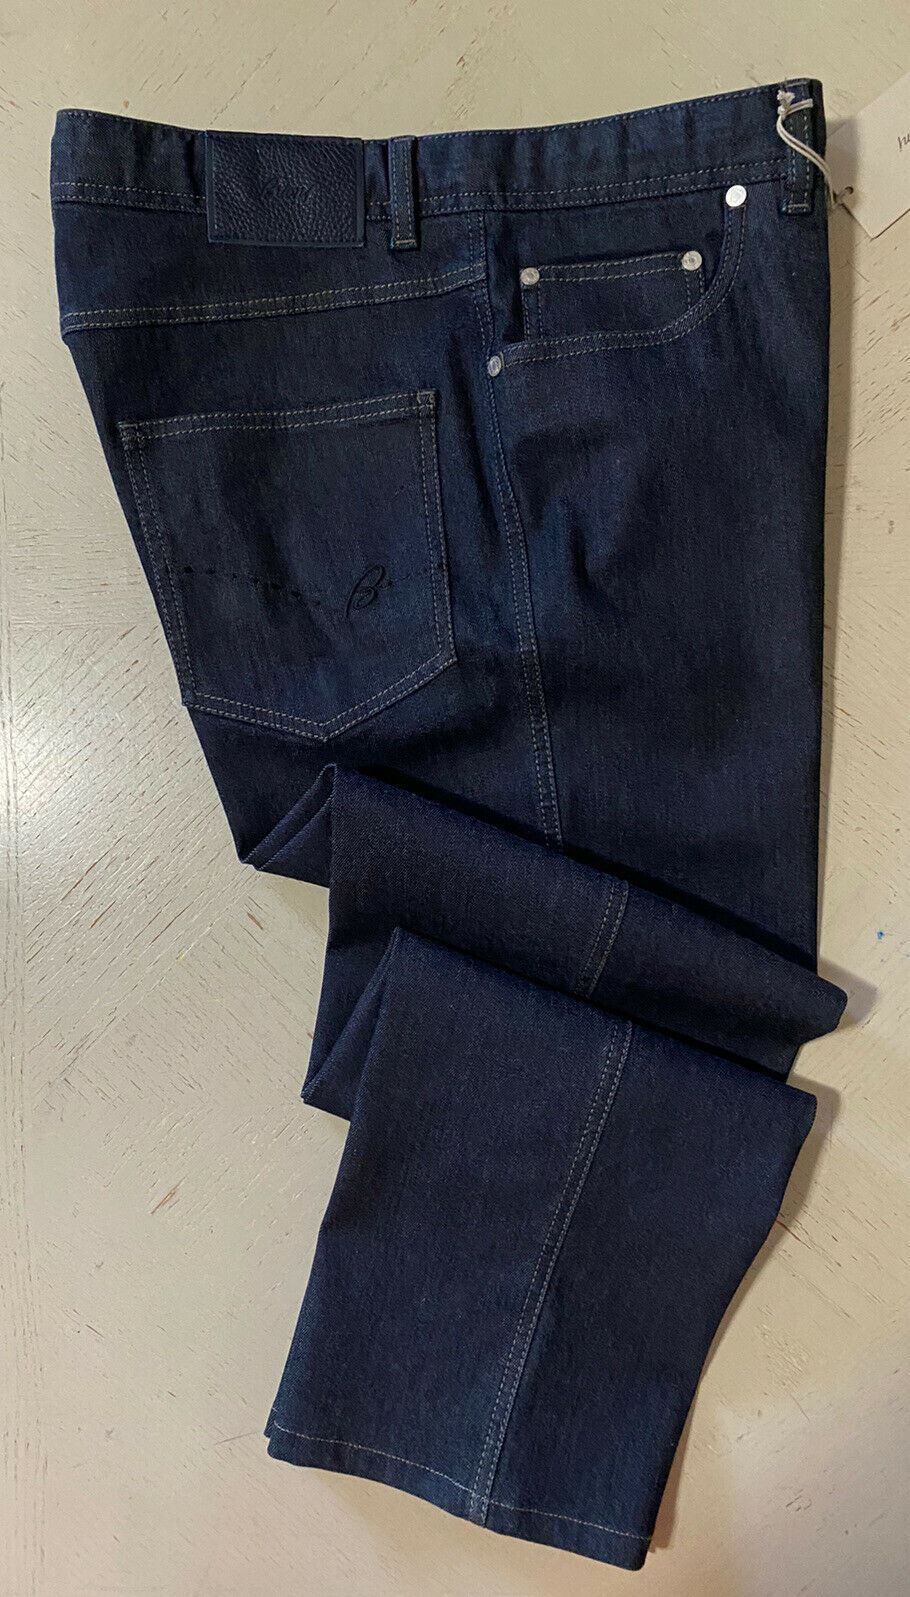 NWT $1150 Brioni Men’s Jeans Pants Navy Denim 36 US/52 Eu Italy